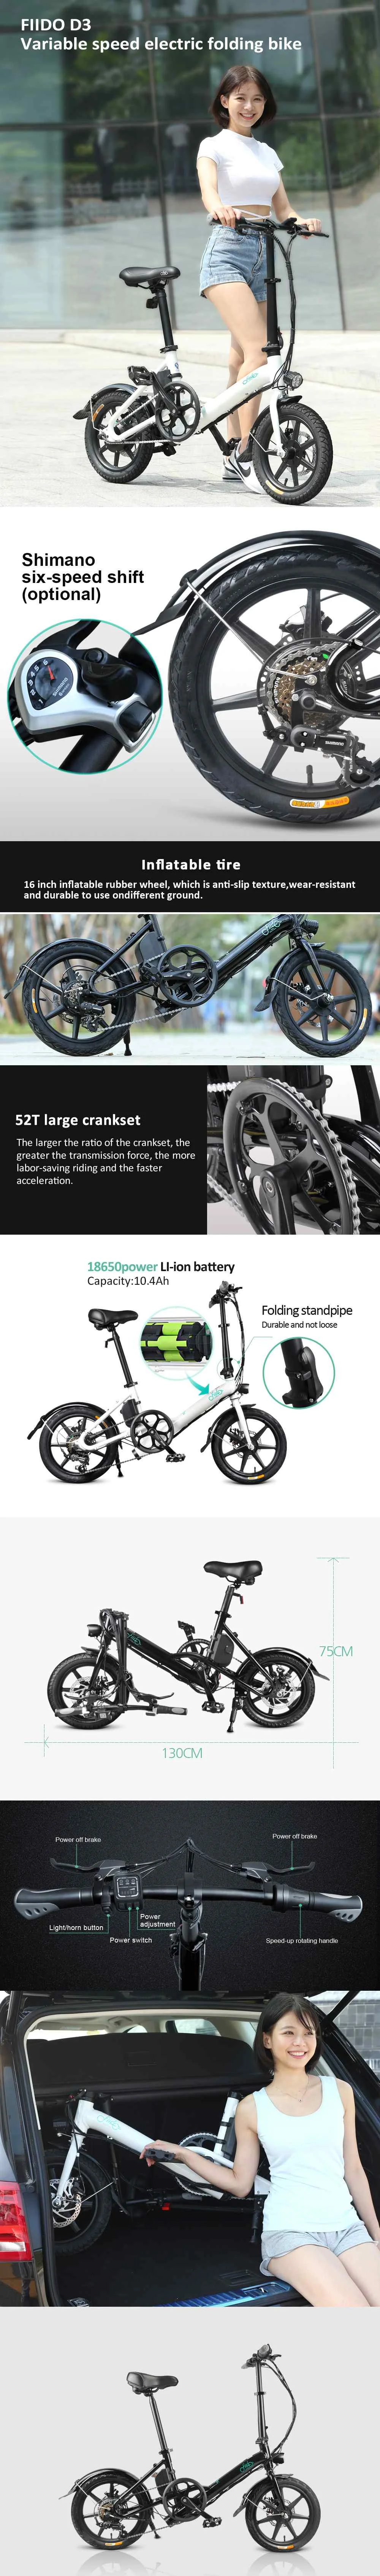 [EU Direct] FIIDO D3S сменная версия электрического велосипеда 36 В 7.8Ah 300 Вт 16 дюймов складной мопед велосипед 25 км/ч Электрический велосипед